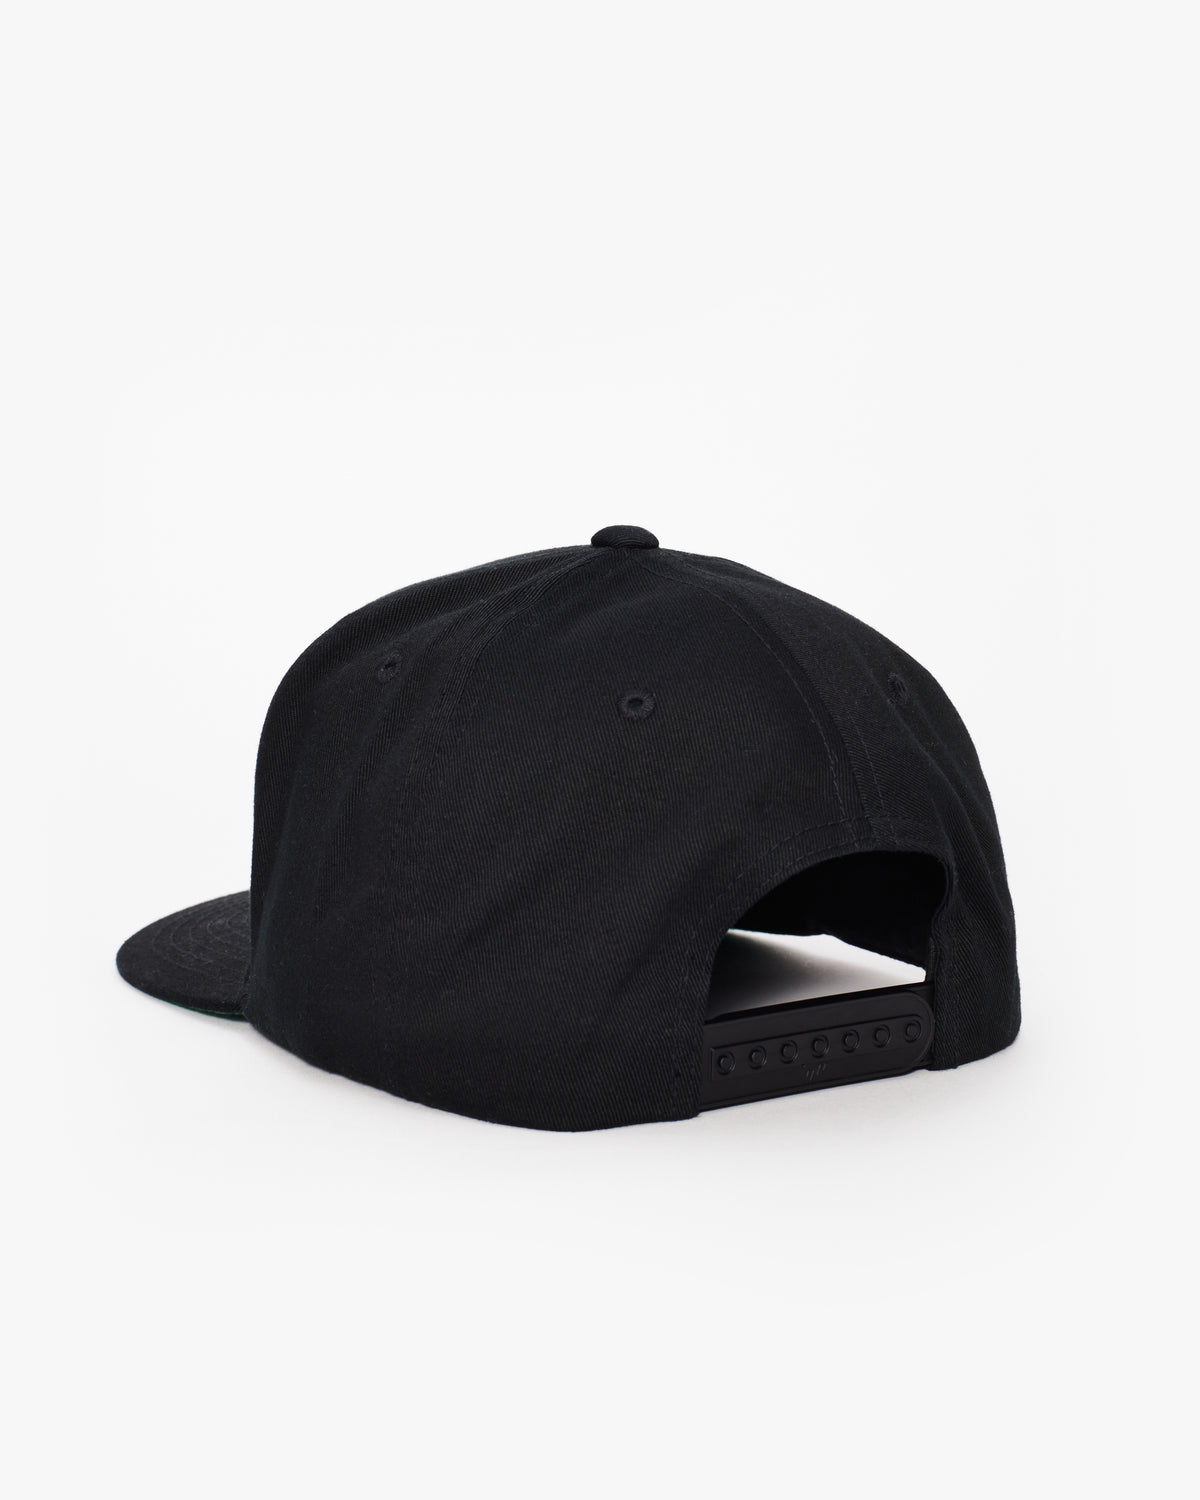 The Flat Brim Hat Snapback Equinox at Equinox – Shop